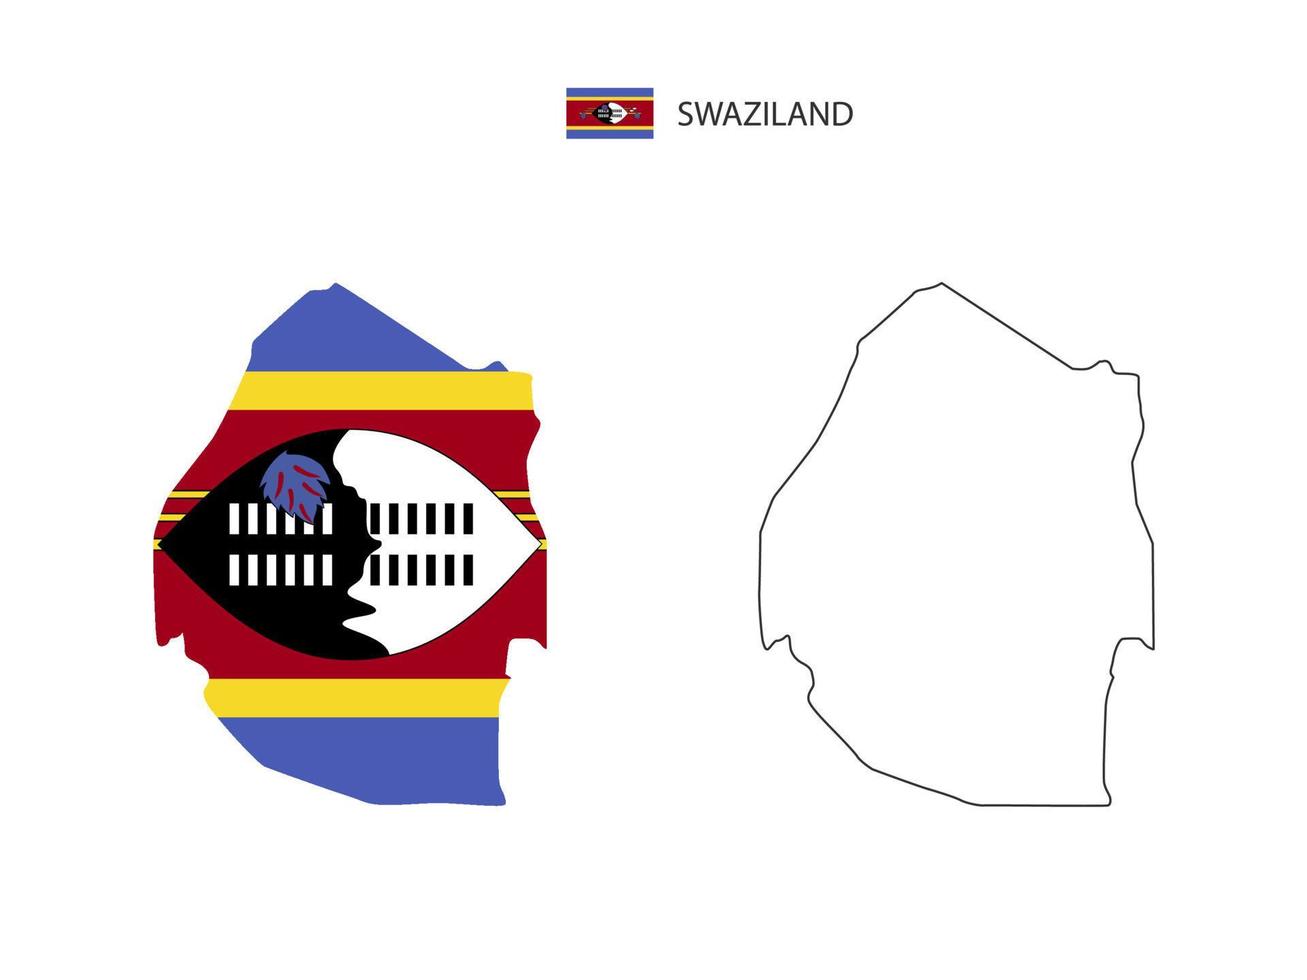 vetor da cidade do mapa eswatini dividido pelo estilo de simplicidade do contorno. tem 2 versões, versão de linha fina preta e cor da versão da bandeira do país. ambos os mapas estavam no fundo branco.